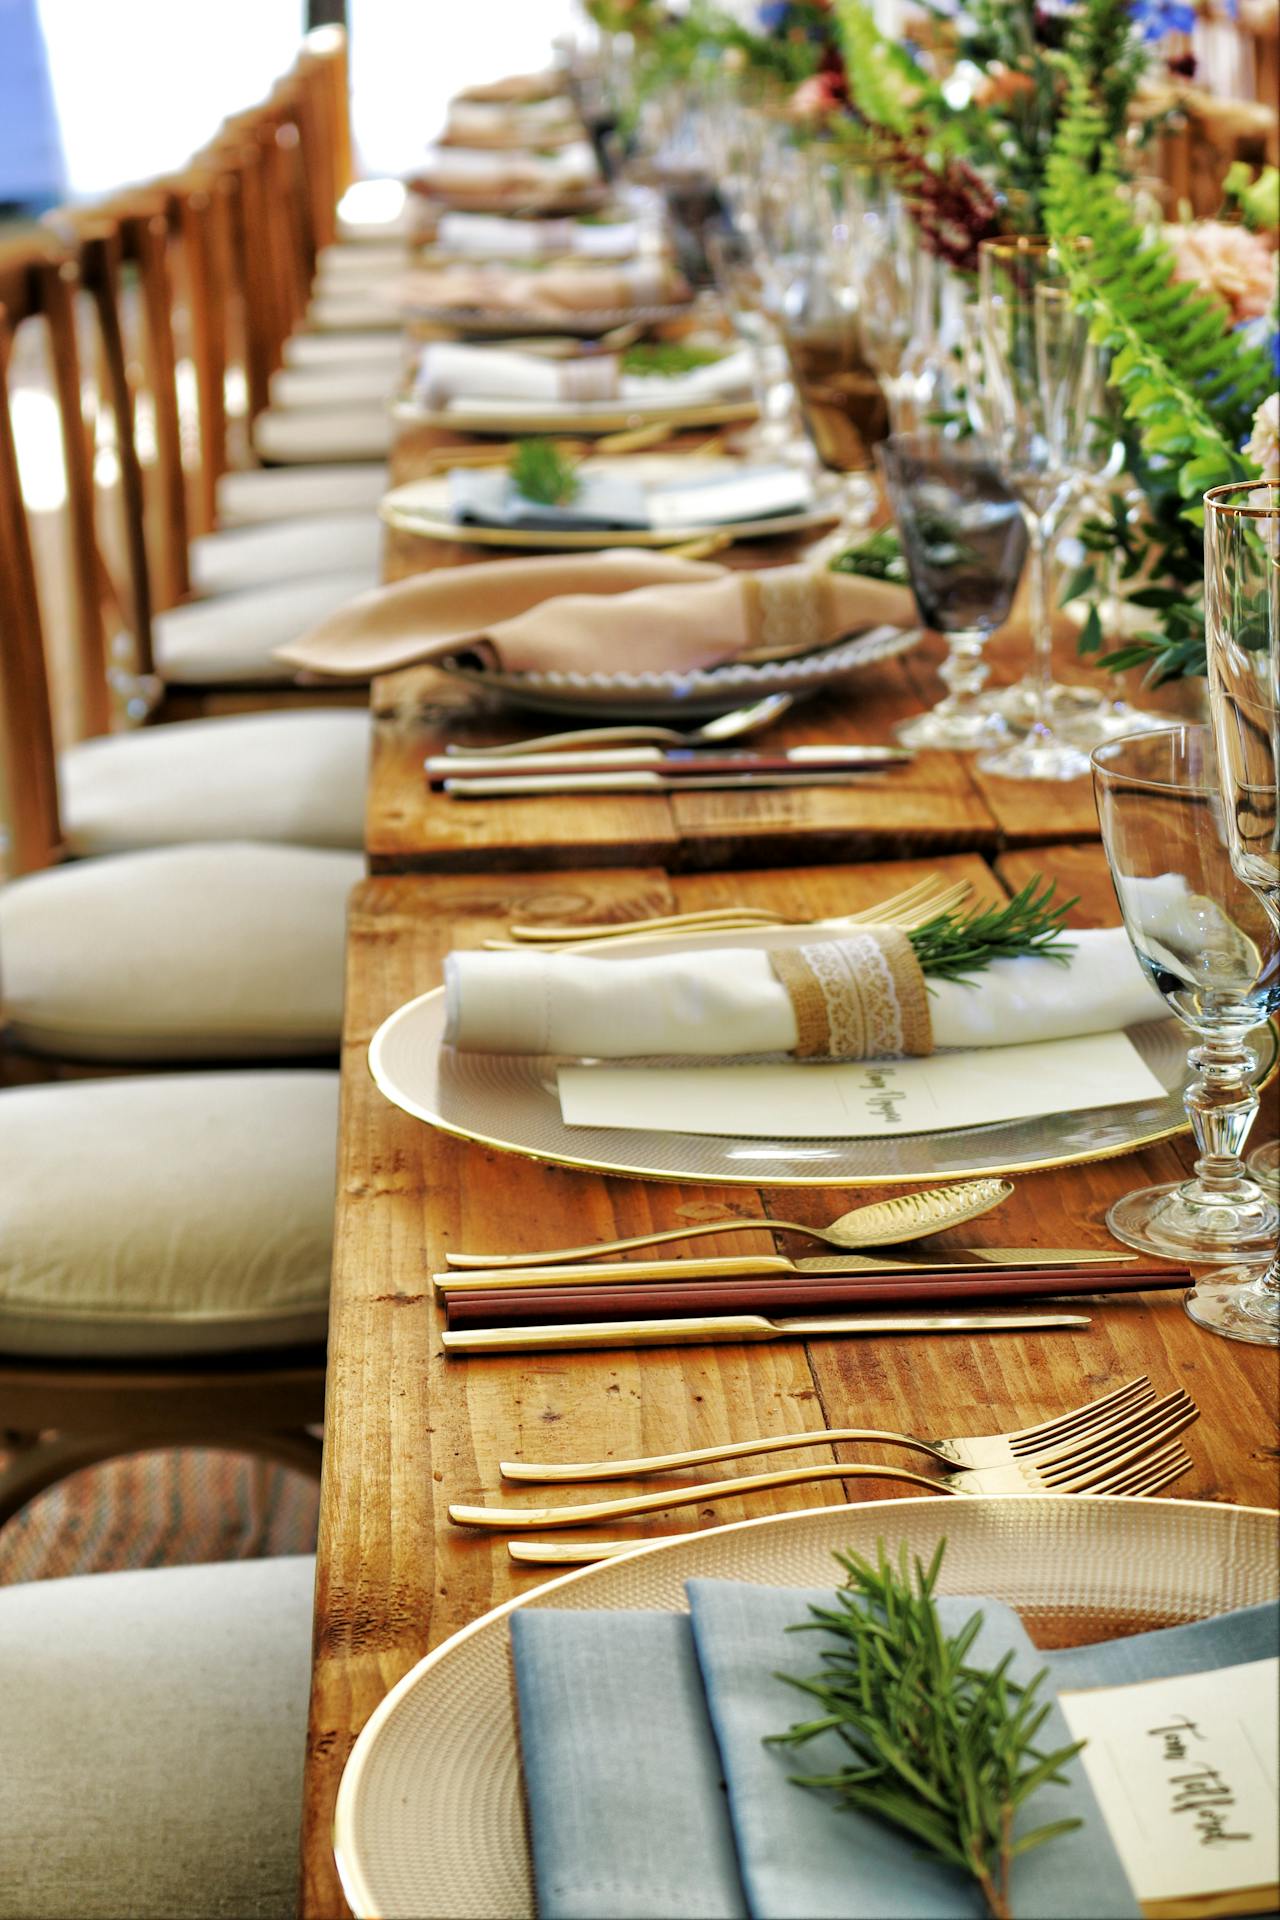 Une table dressée pour un dîner spécial | Source : Pexels